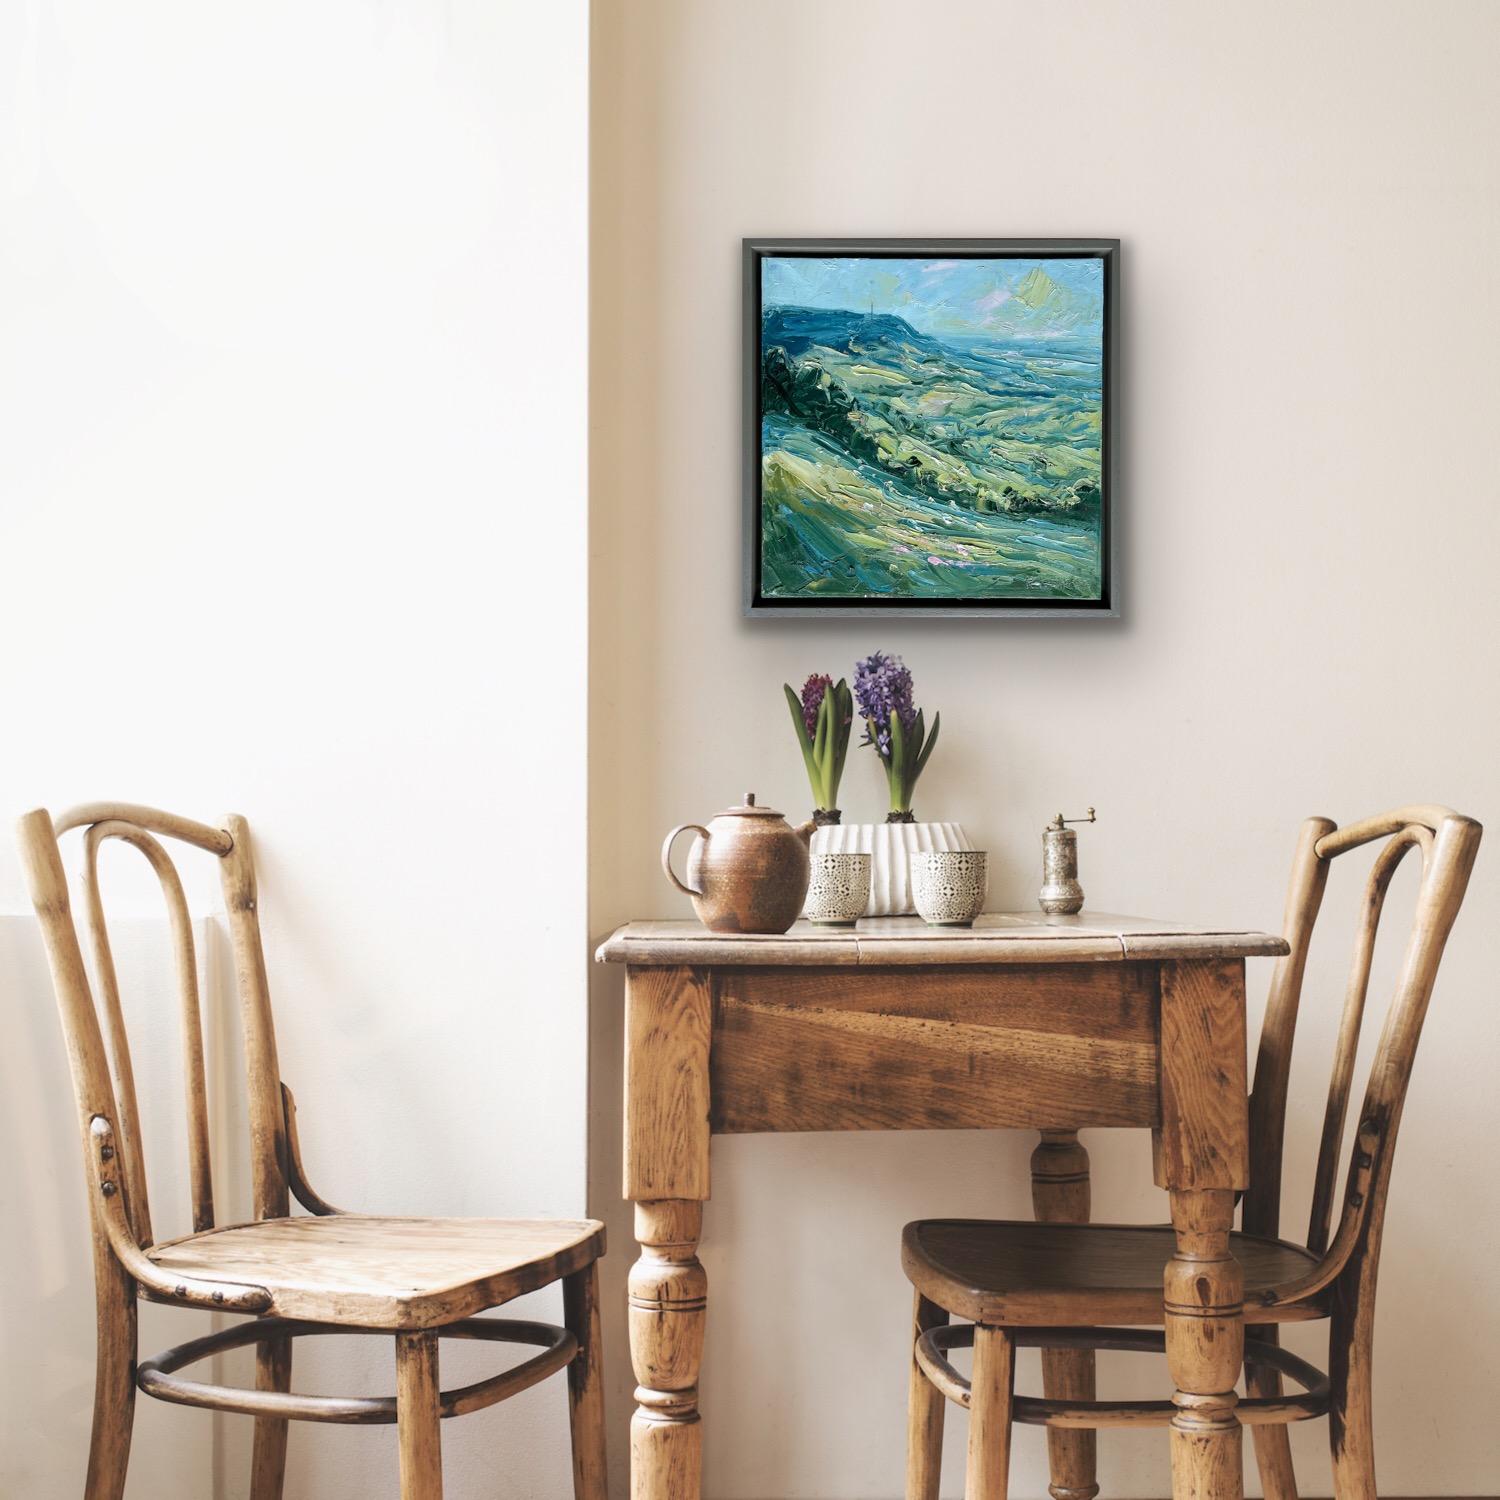 Hill, après-midi, Gloucestershire. Paysage impressionniste - Painting de Rupert Aker